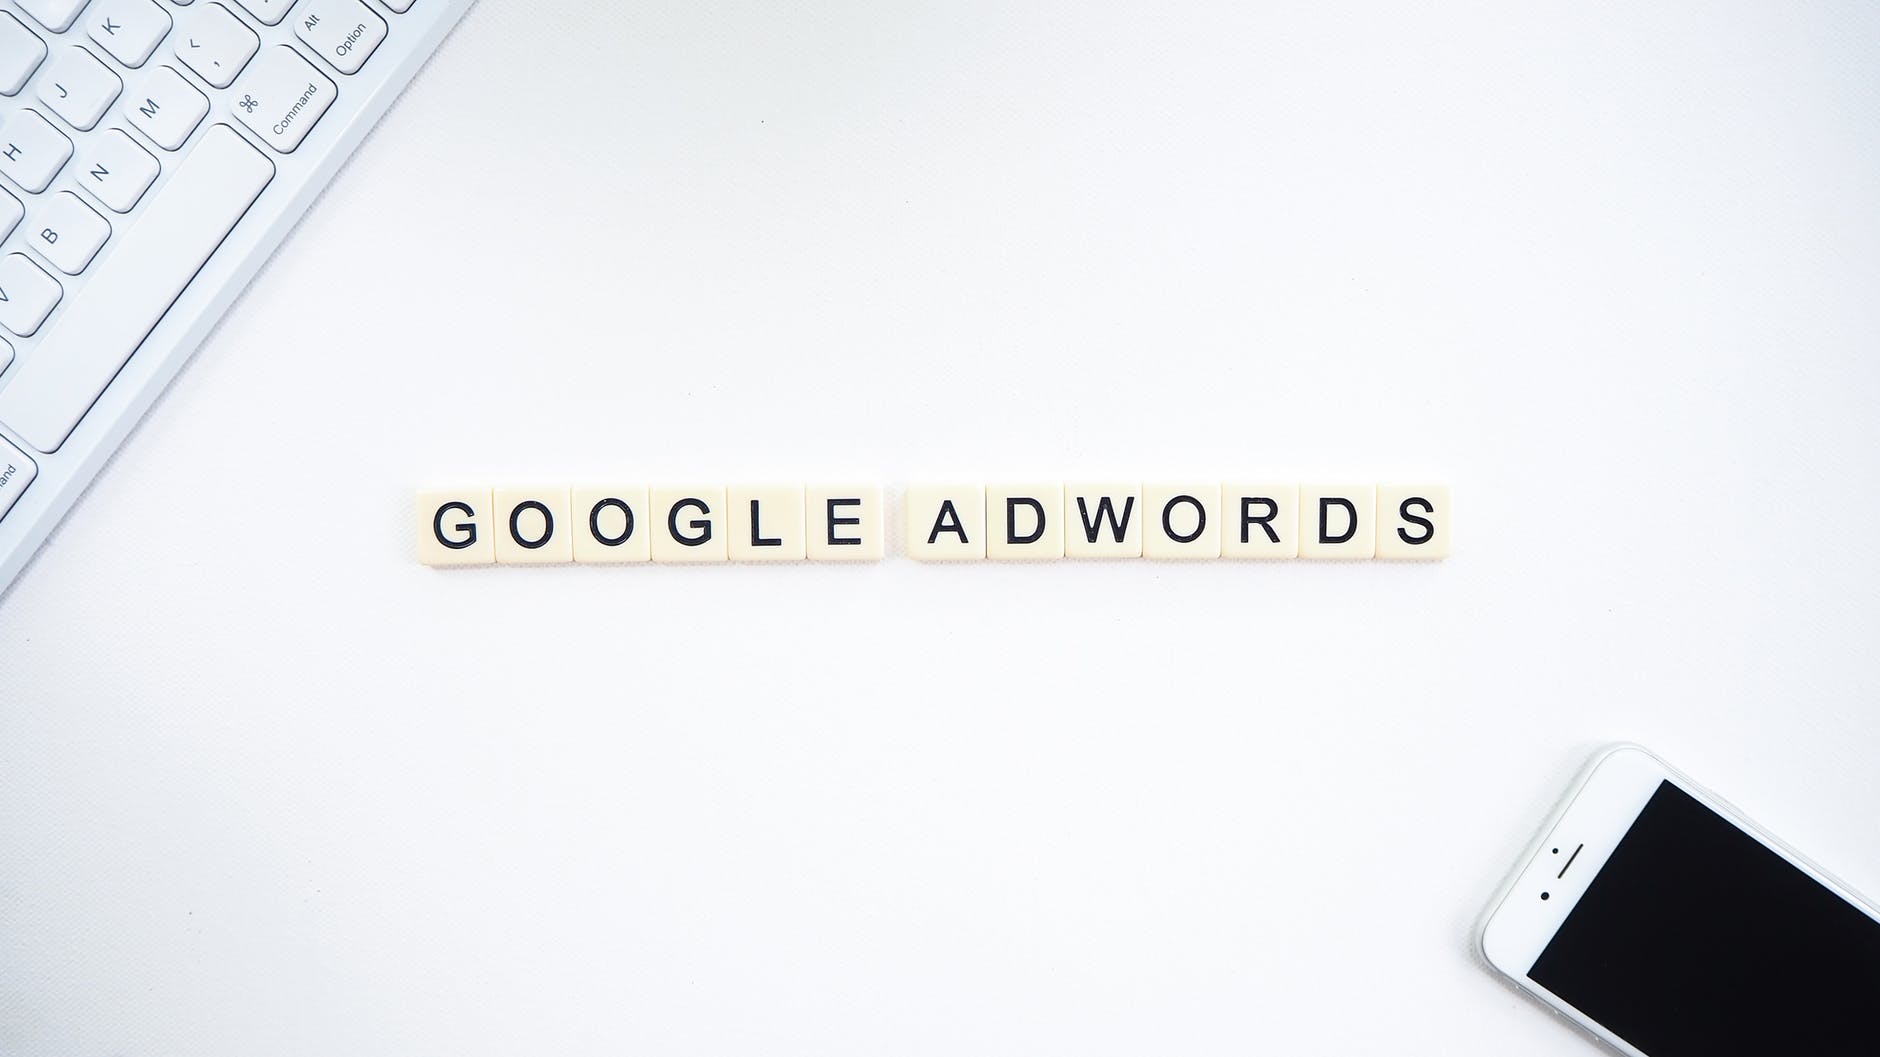 Google adwords written in scrabble letters